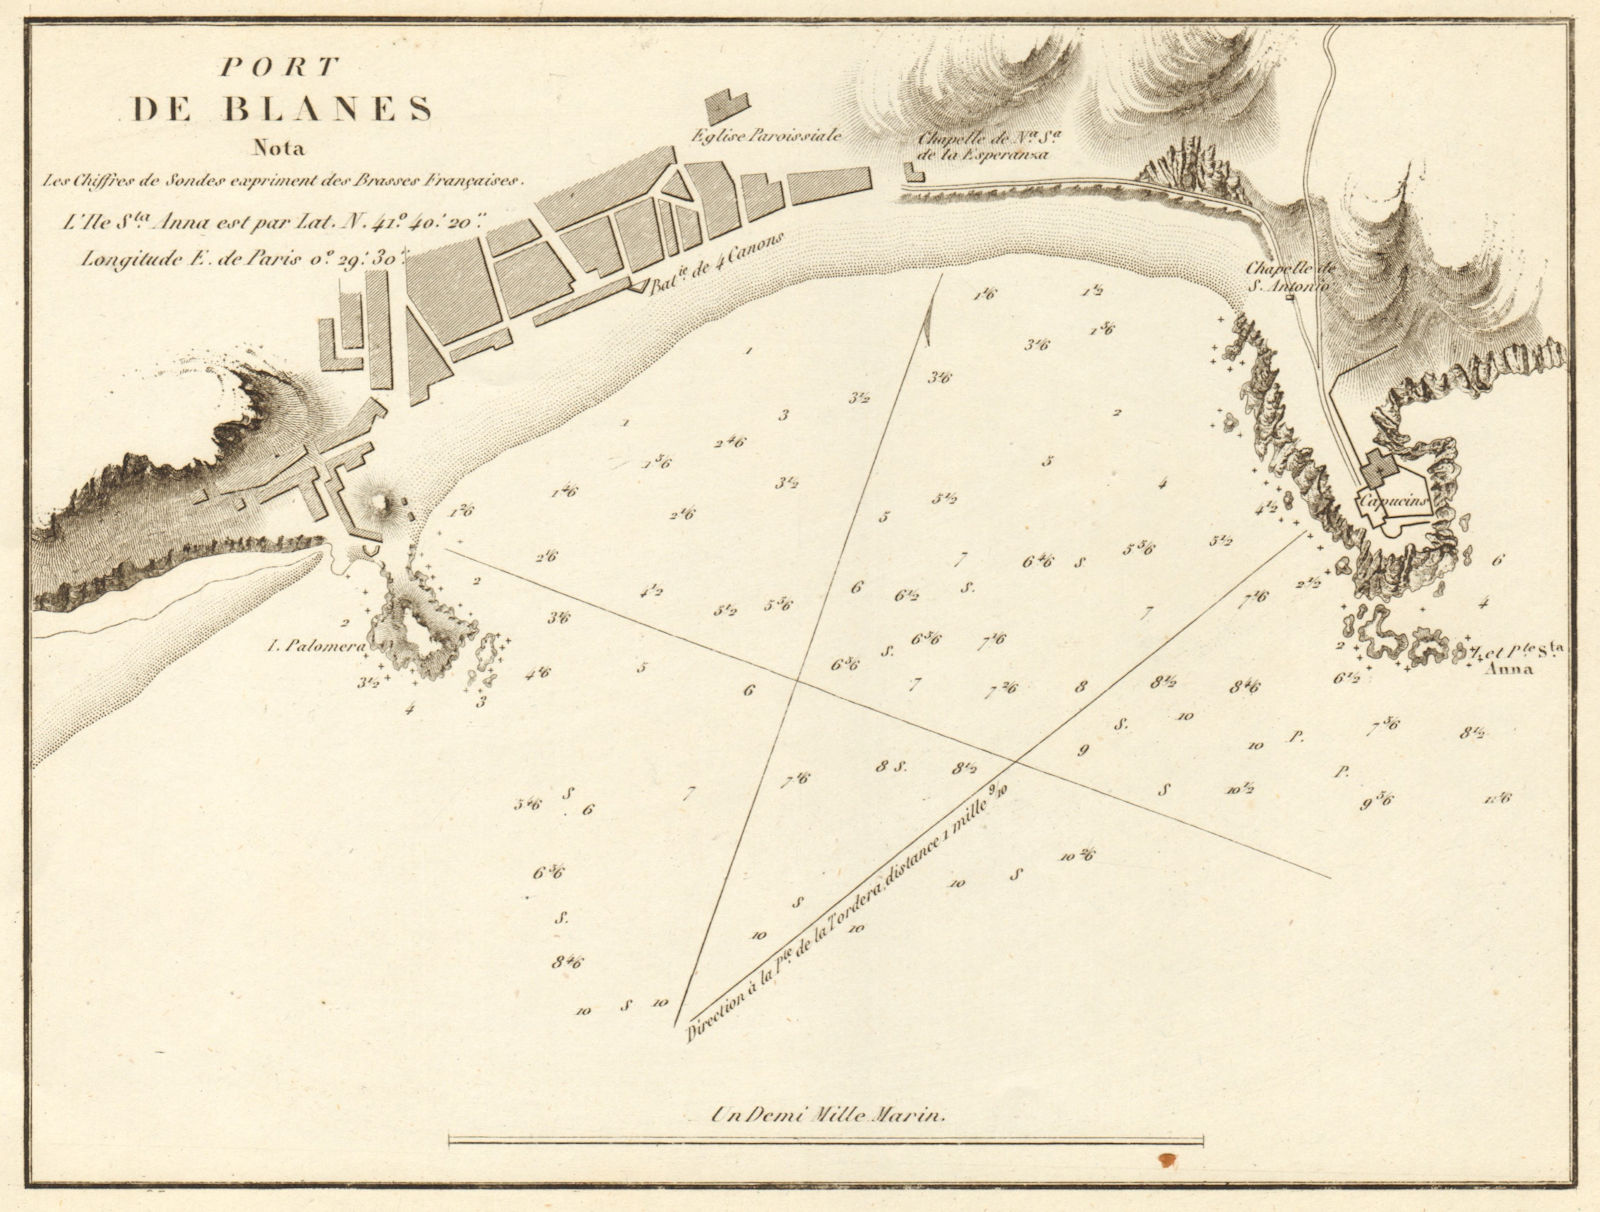 Port of Blanes. 'Port de Blanes'. Spain. Girona. GAUTTIER 1851 old antique map